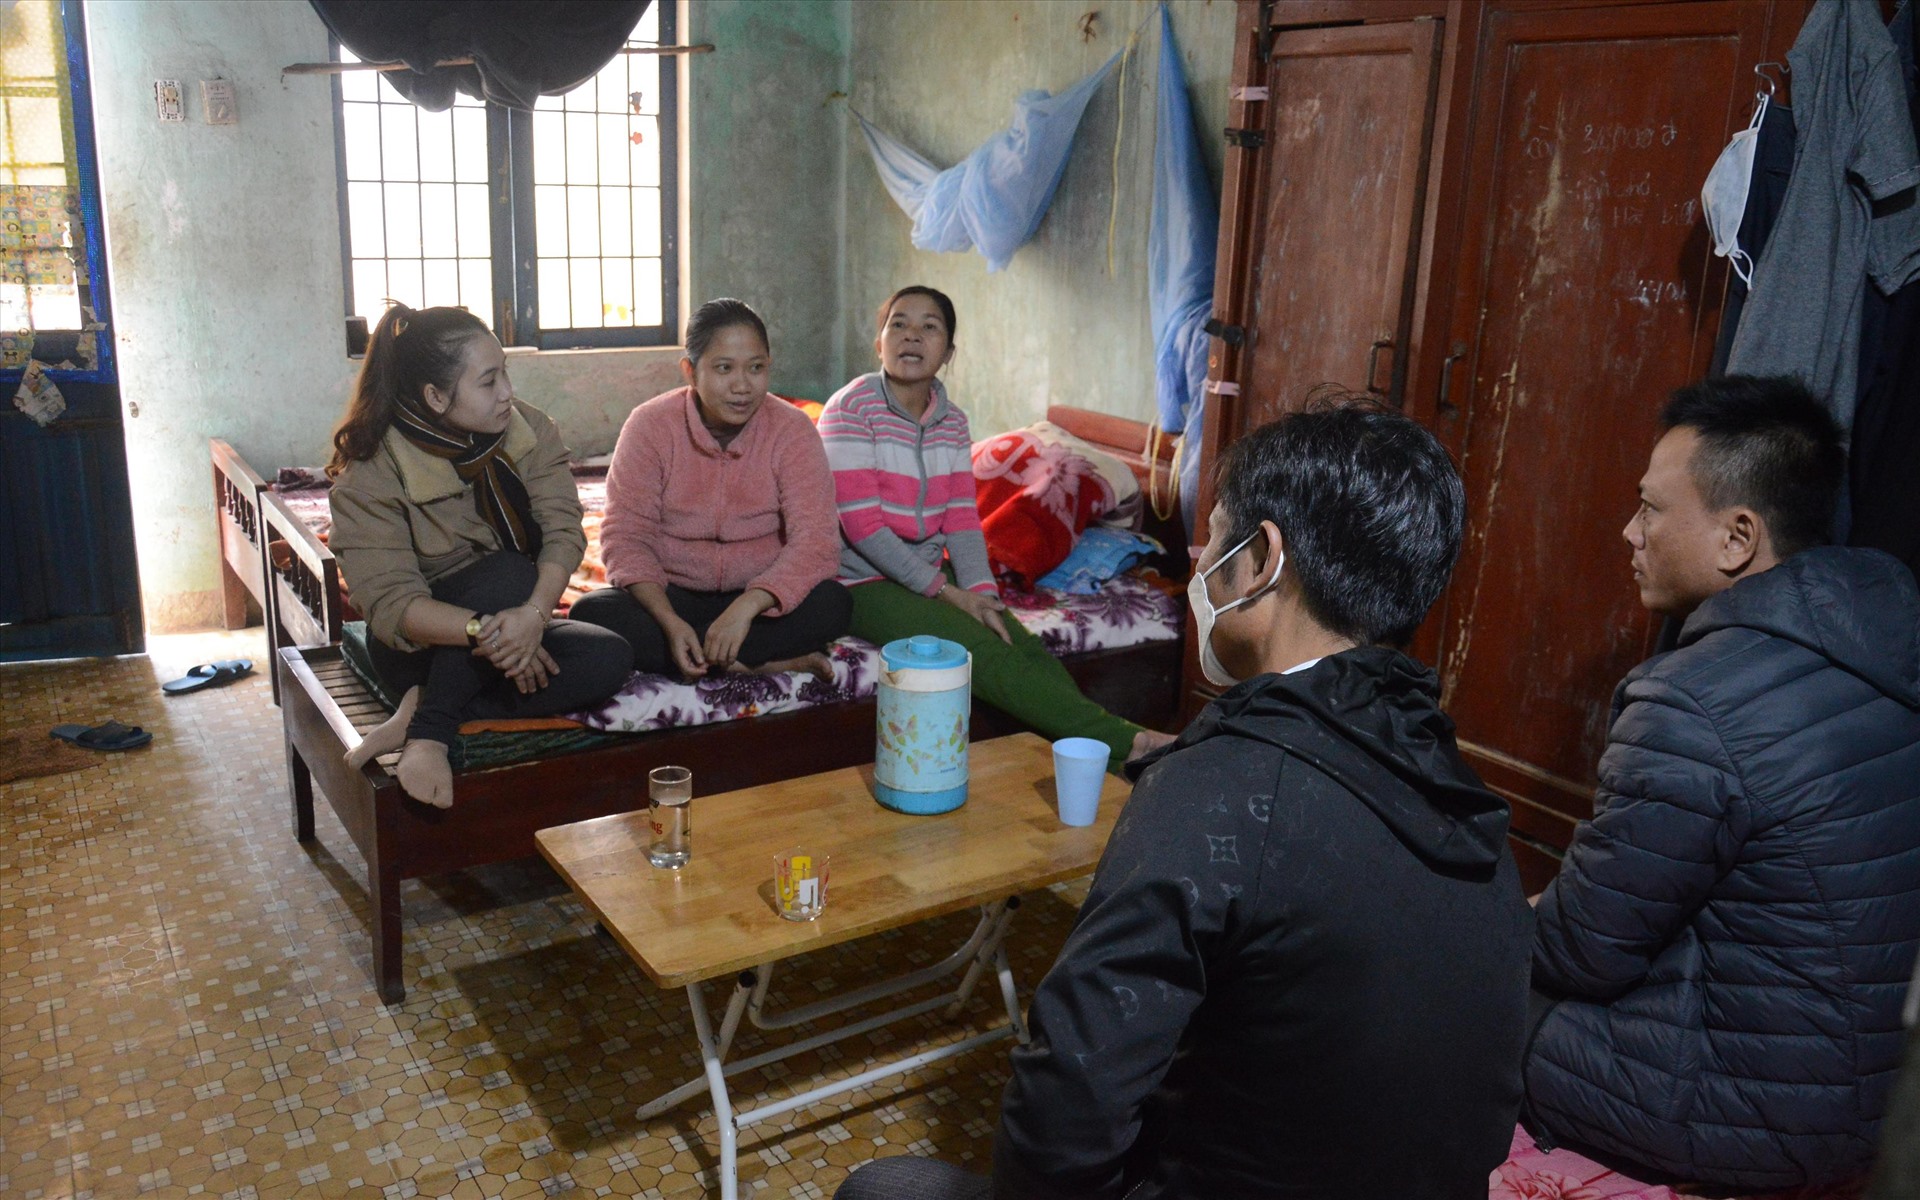 Thiếu nhà công vụ nên nhiều giáo viên ở miền núi Quảng Ngãi phải ở xen ghép, một phòng từ 3-5 người, gặp nhiều bất tiện trong sinh hoạt. Ảnh: Ngọc Viên